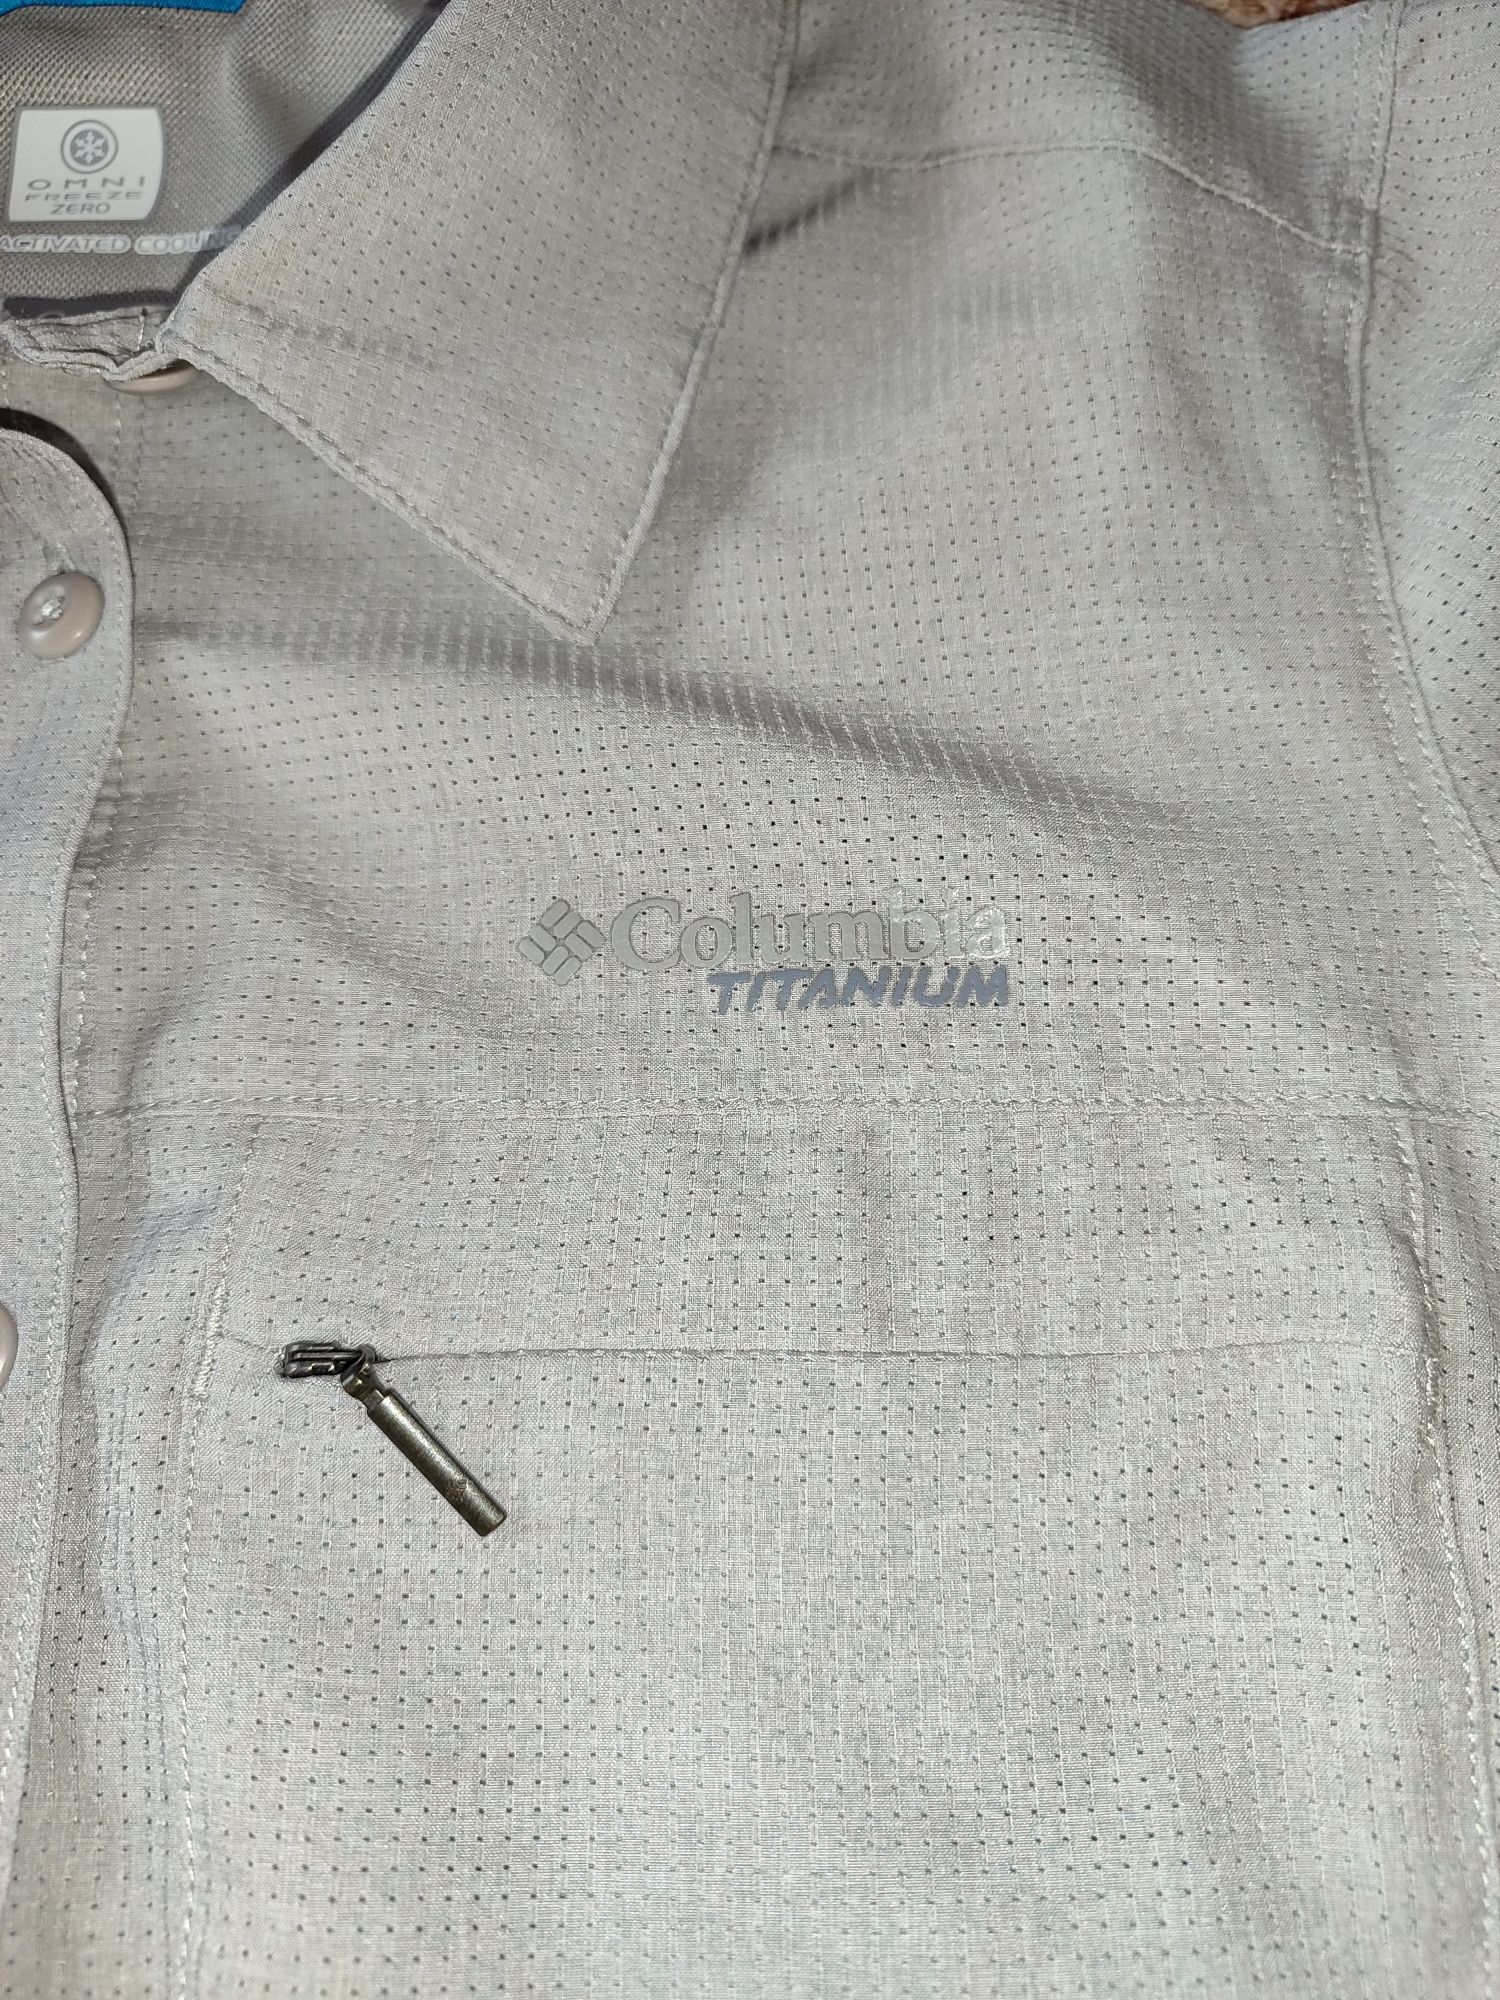 Рубашка Columbia Titanium Omni Freeze р. S-M